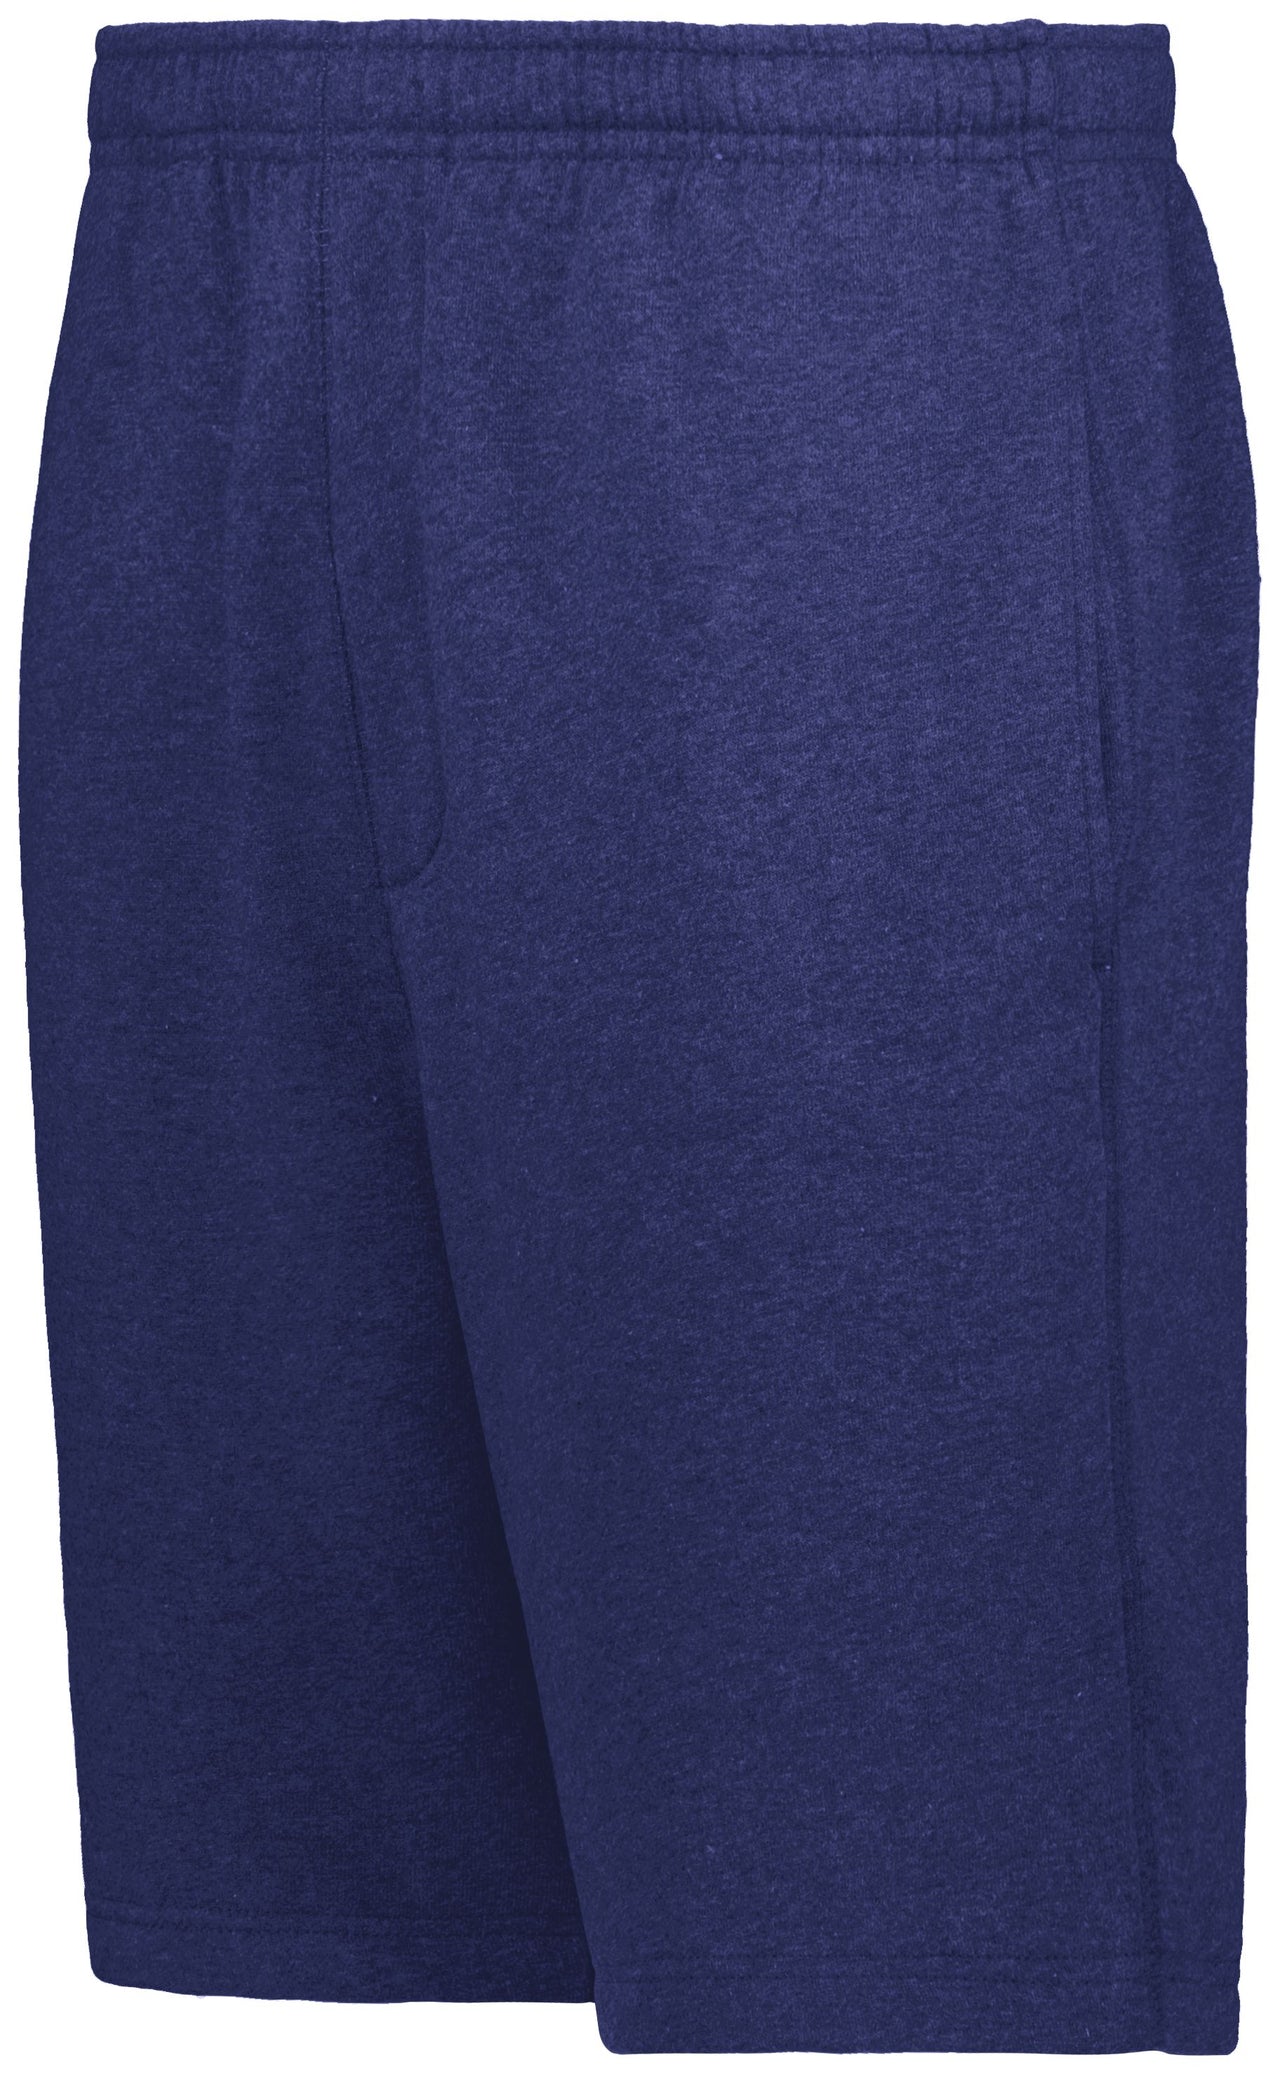 60/40 Fleece Shorts - 222802